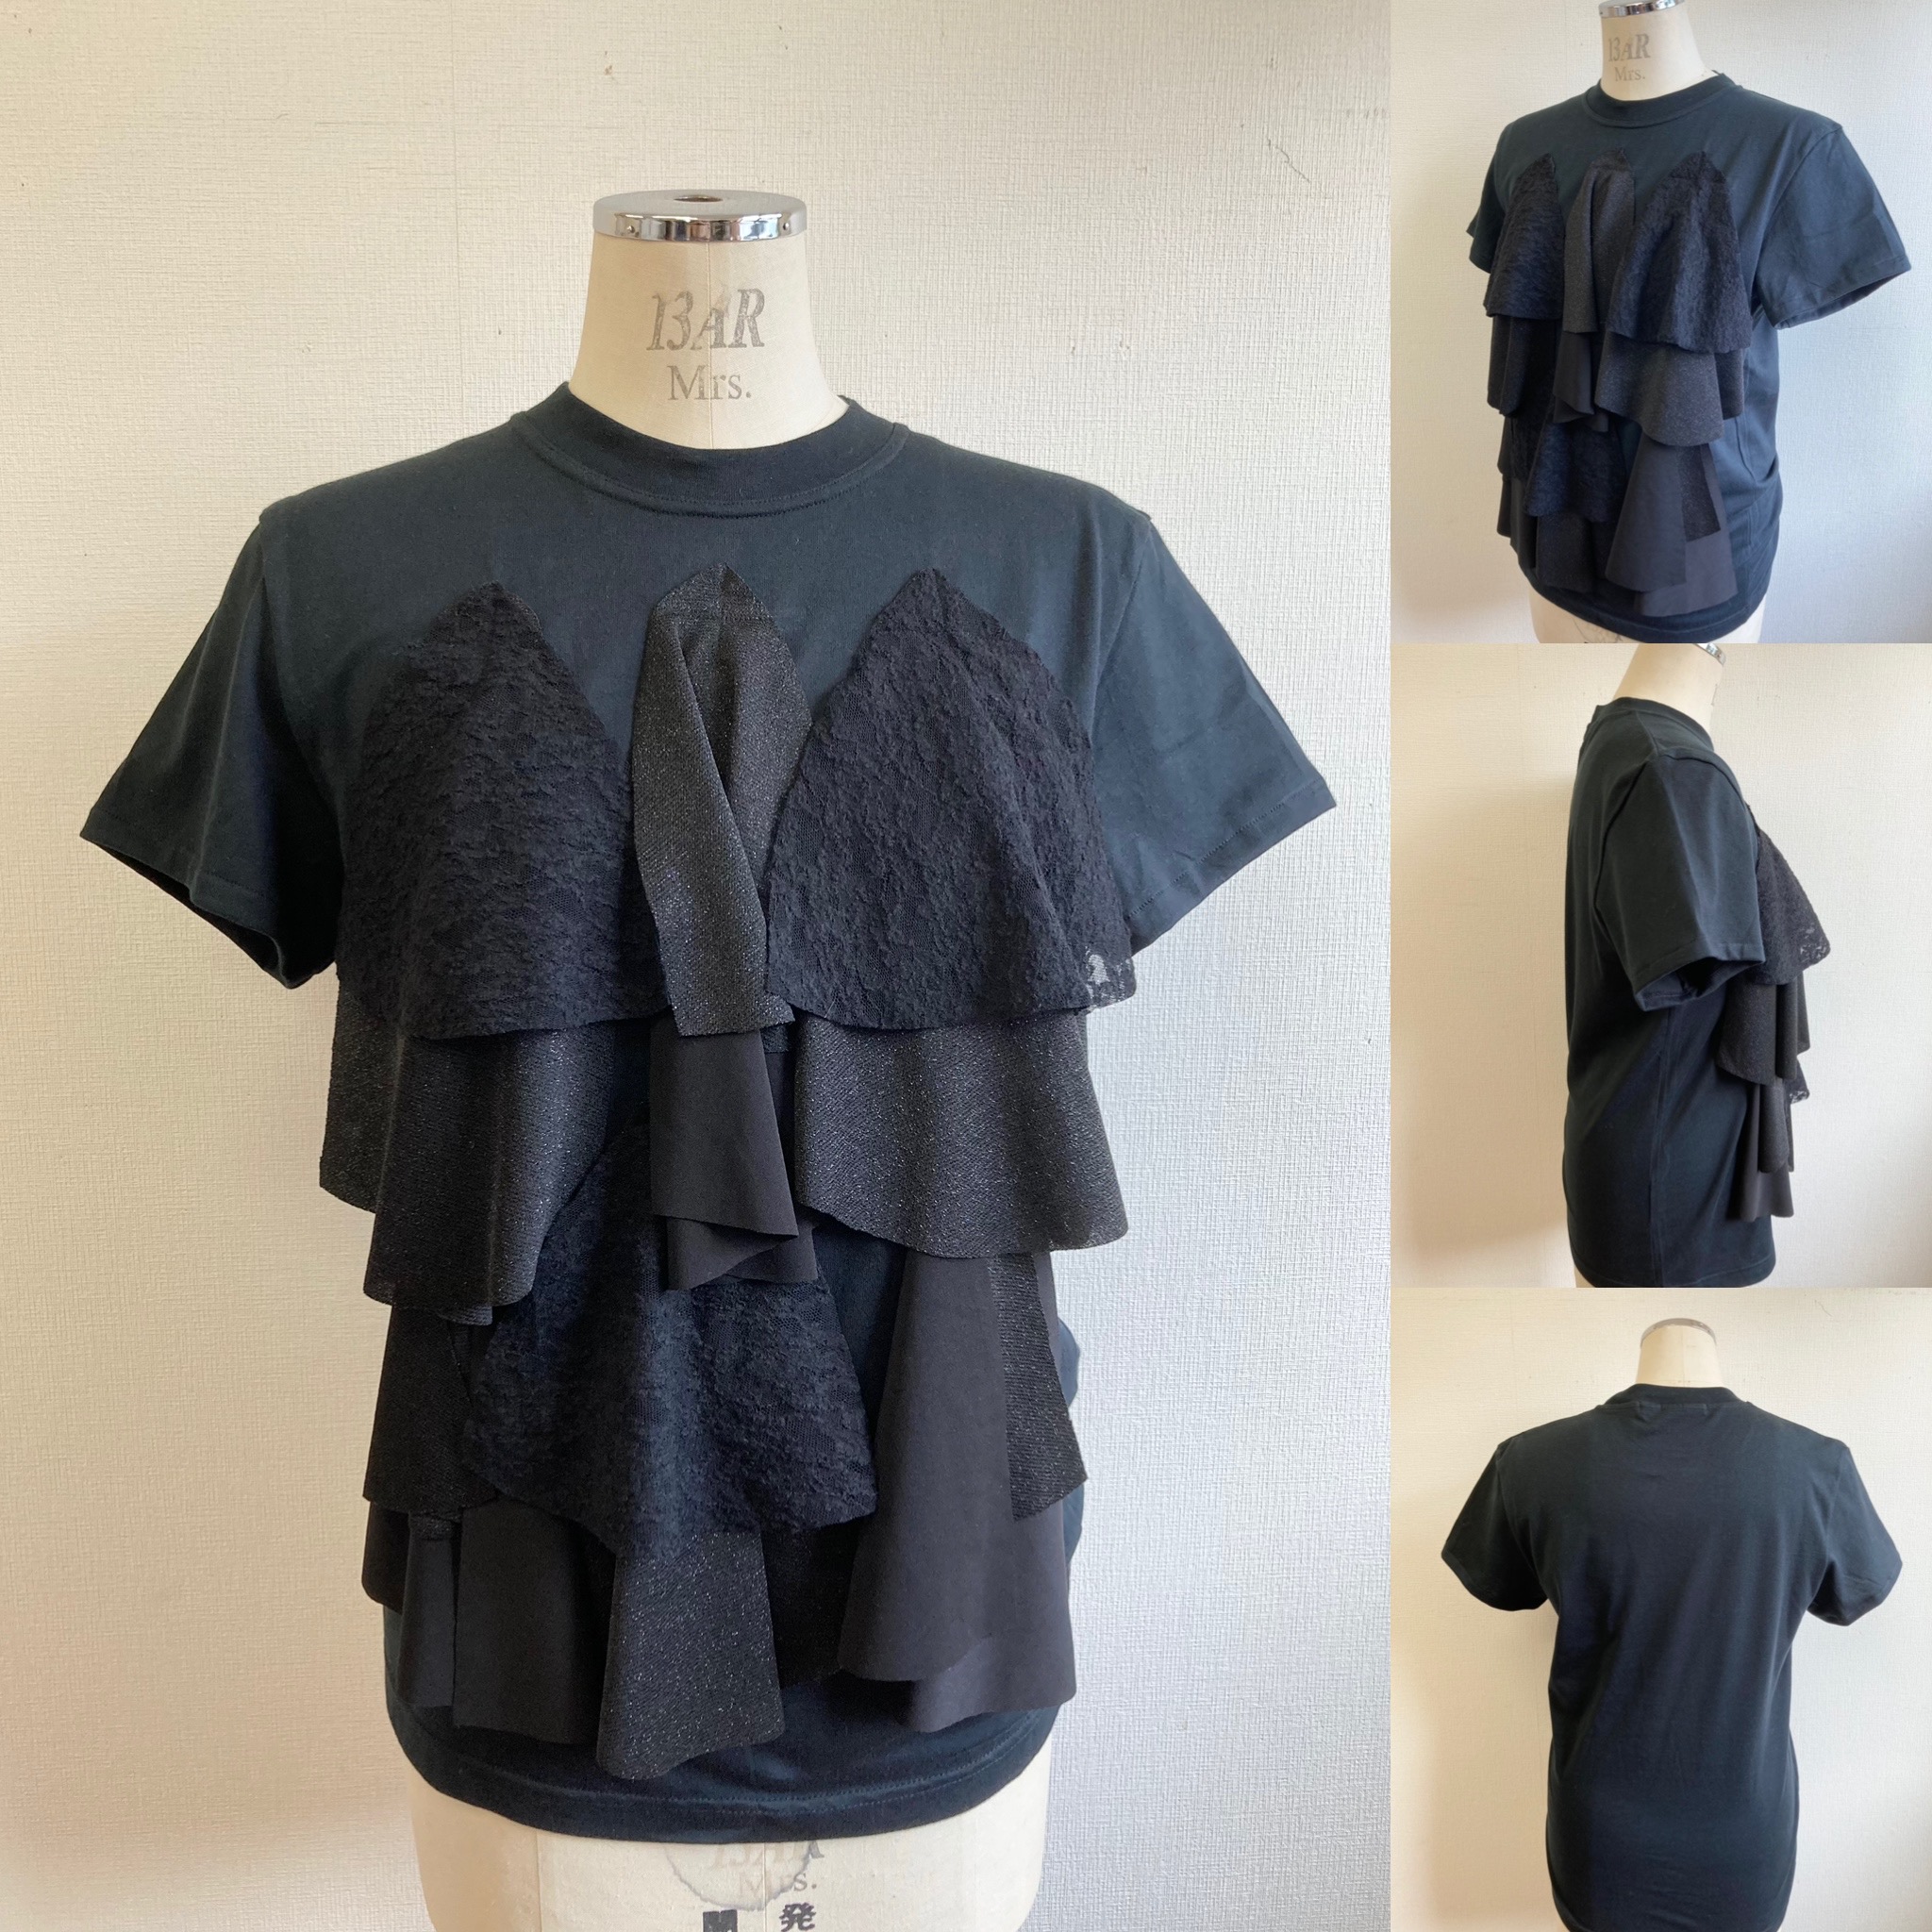 セール価格 リメイクtシャツ シフォンレースの前フリルtシャツ 黒 サイズ L Iichi ハンドメイド クラフト作品 手仕事品の通販